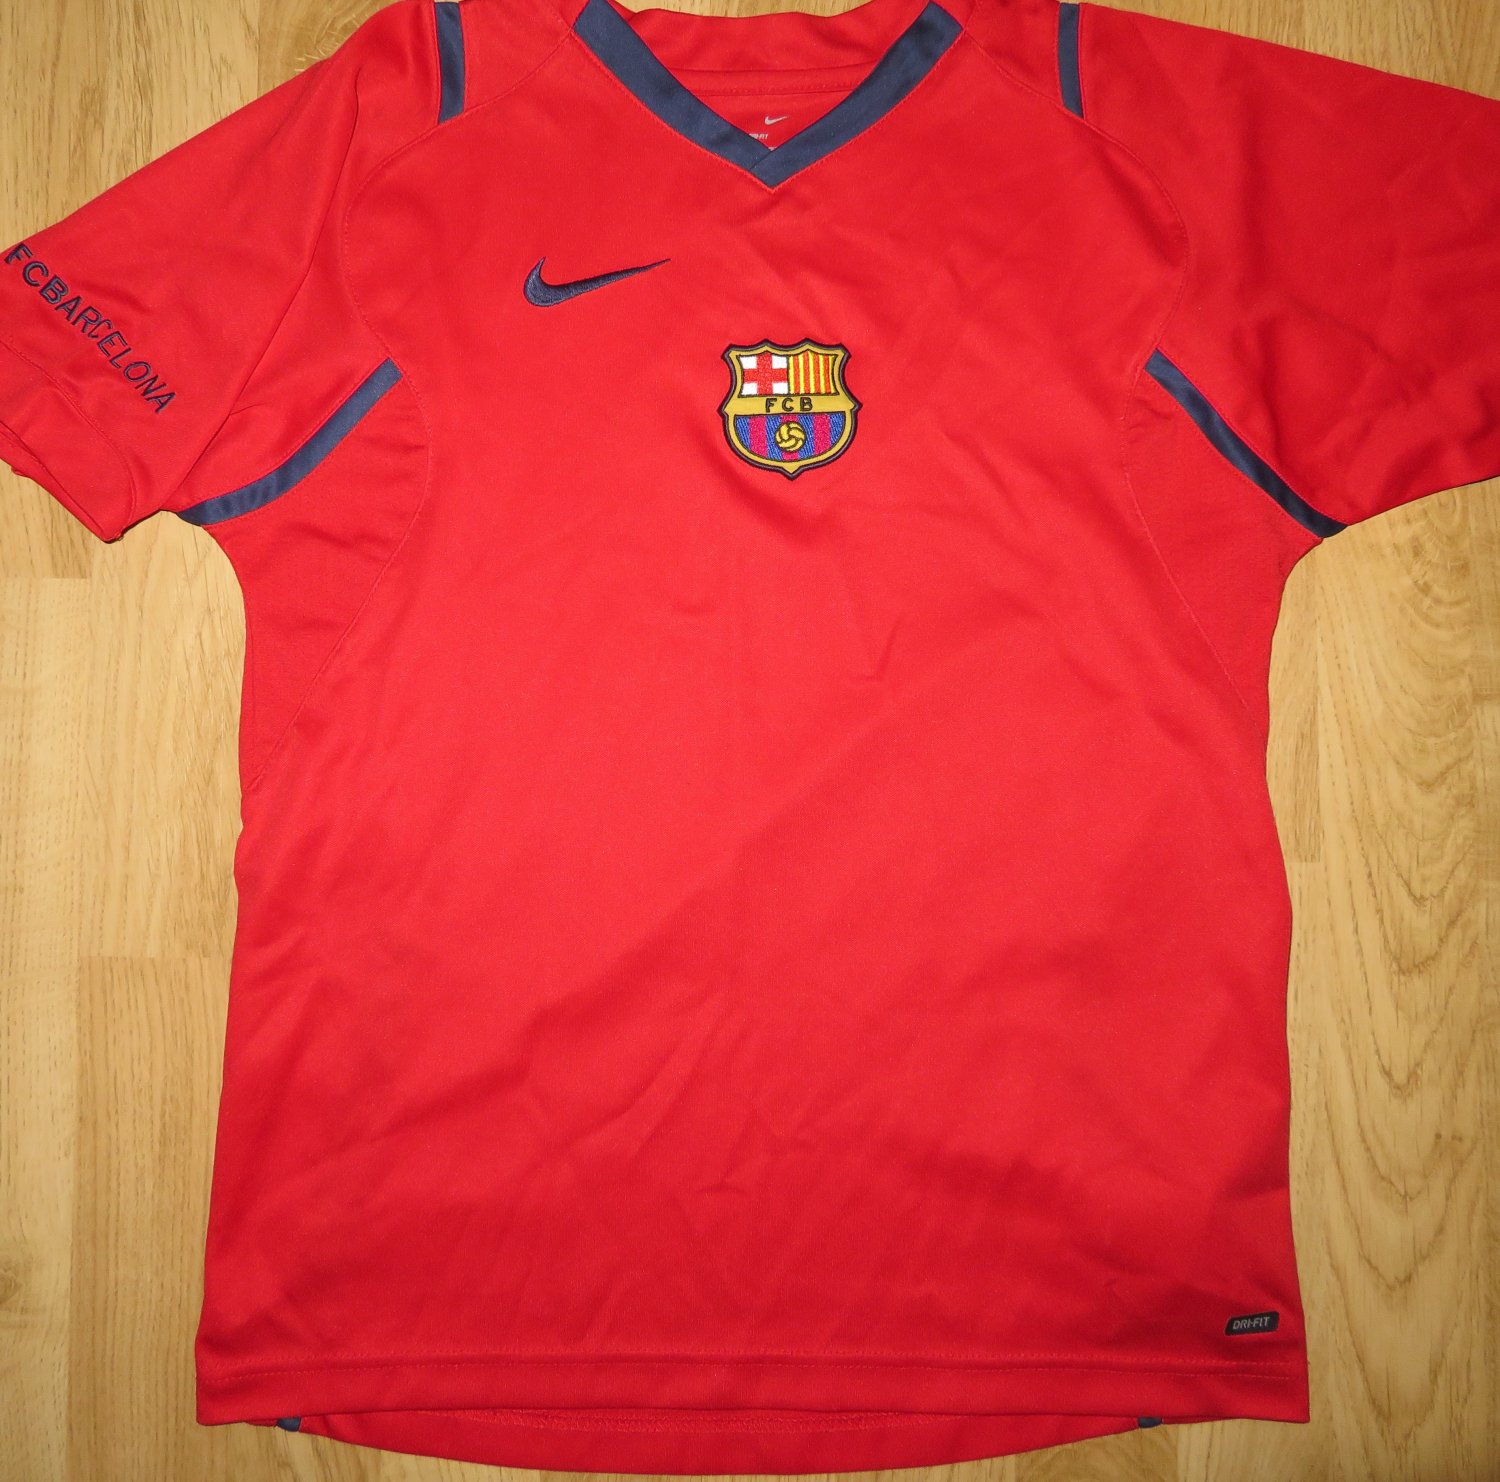 Barcelona Allenamento/Leisure maglia di calcio 2006 - 2007.